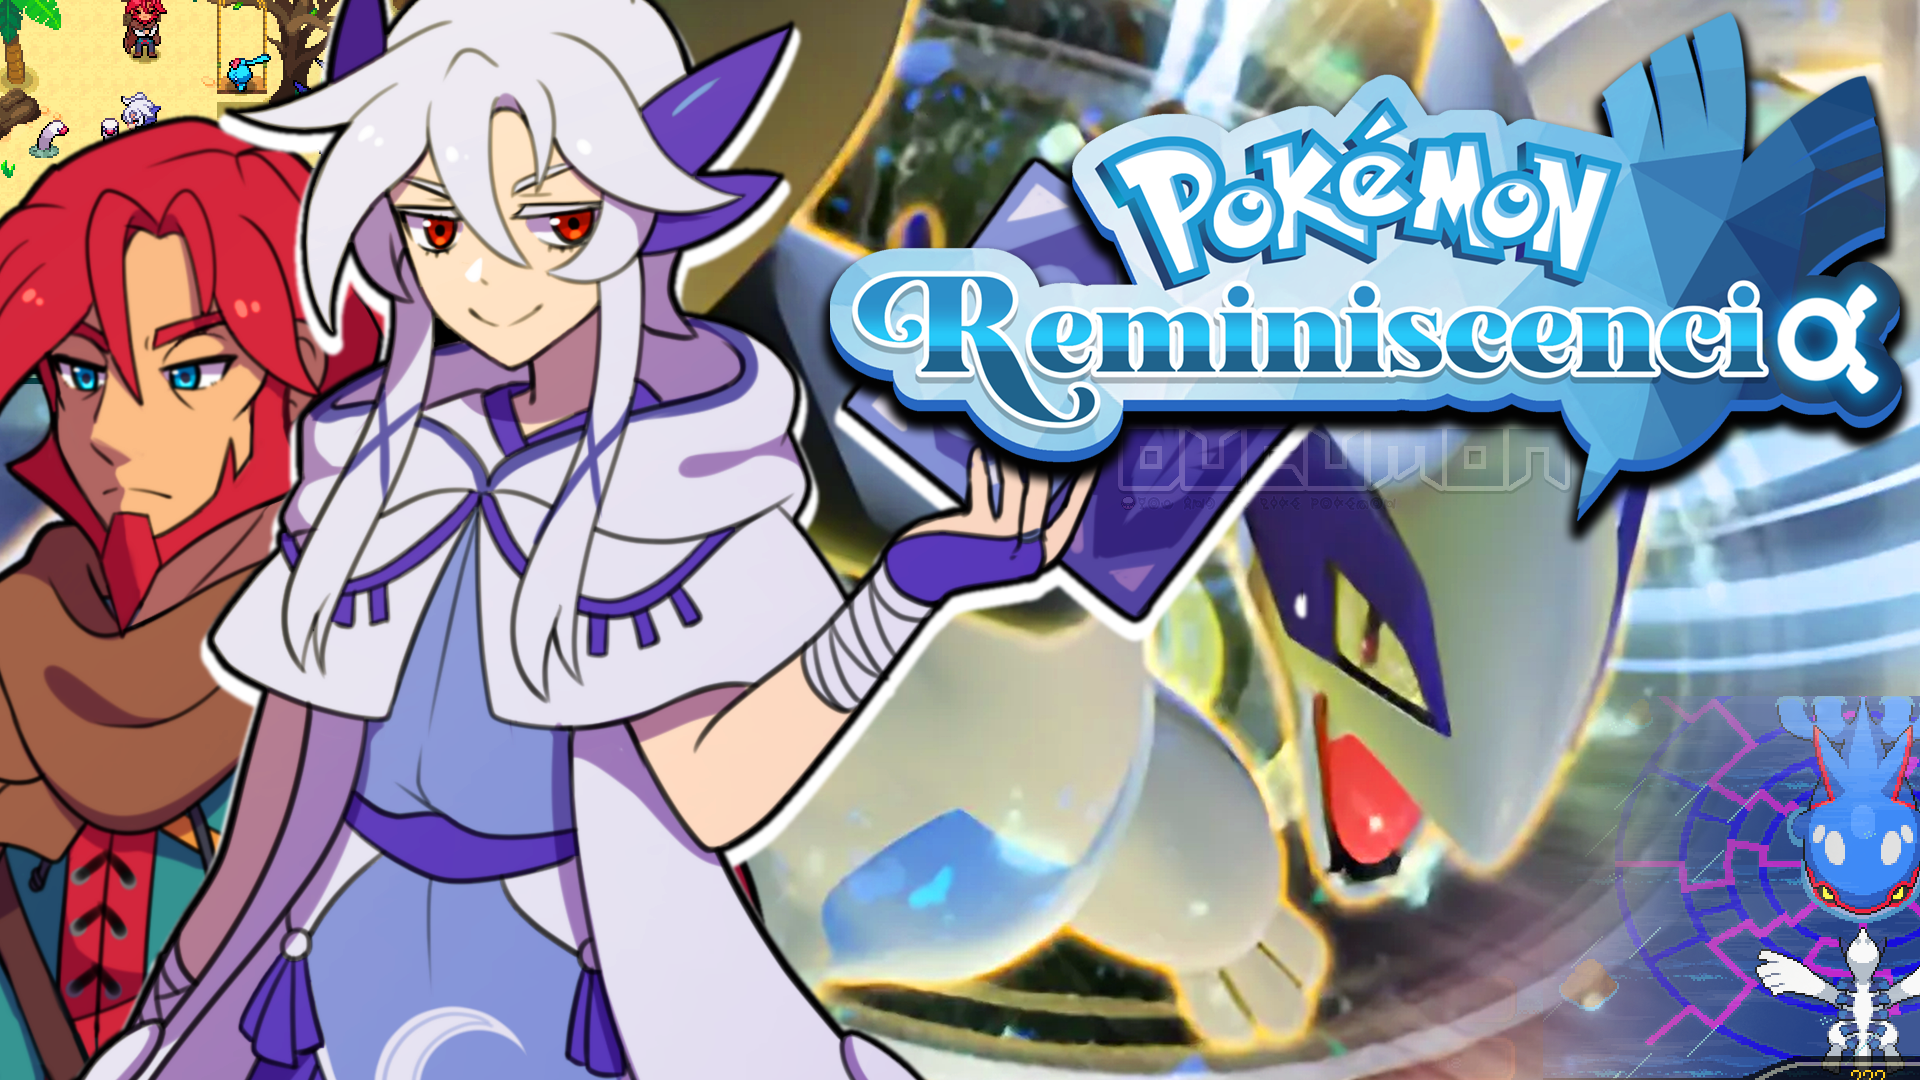 Pokemon Reminiscencia - Хорошая фанатская игра про Лугию в человеческом облике с хорошим сюжетом, гр